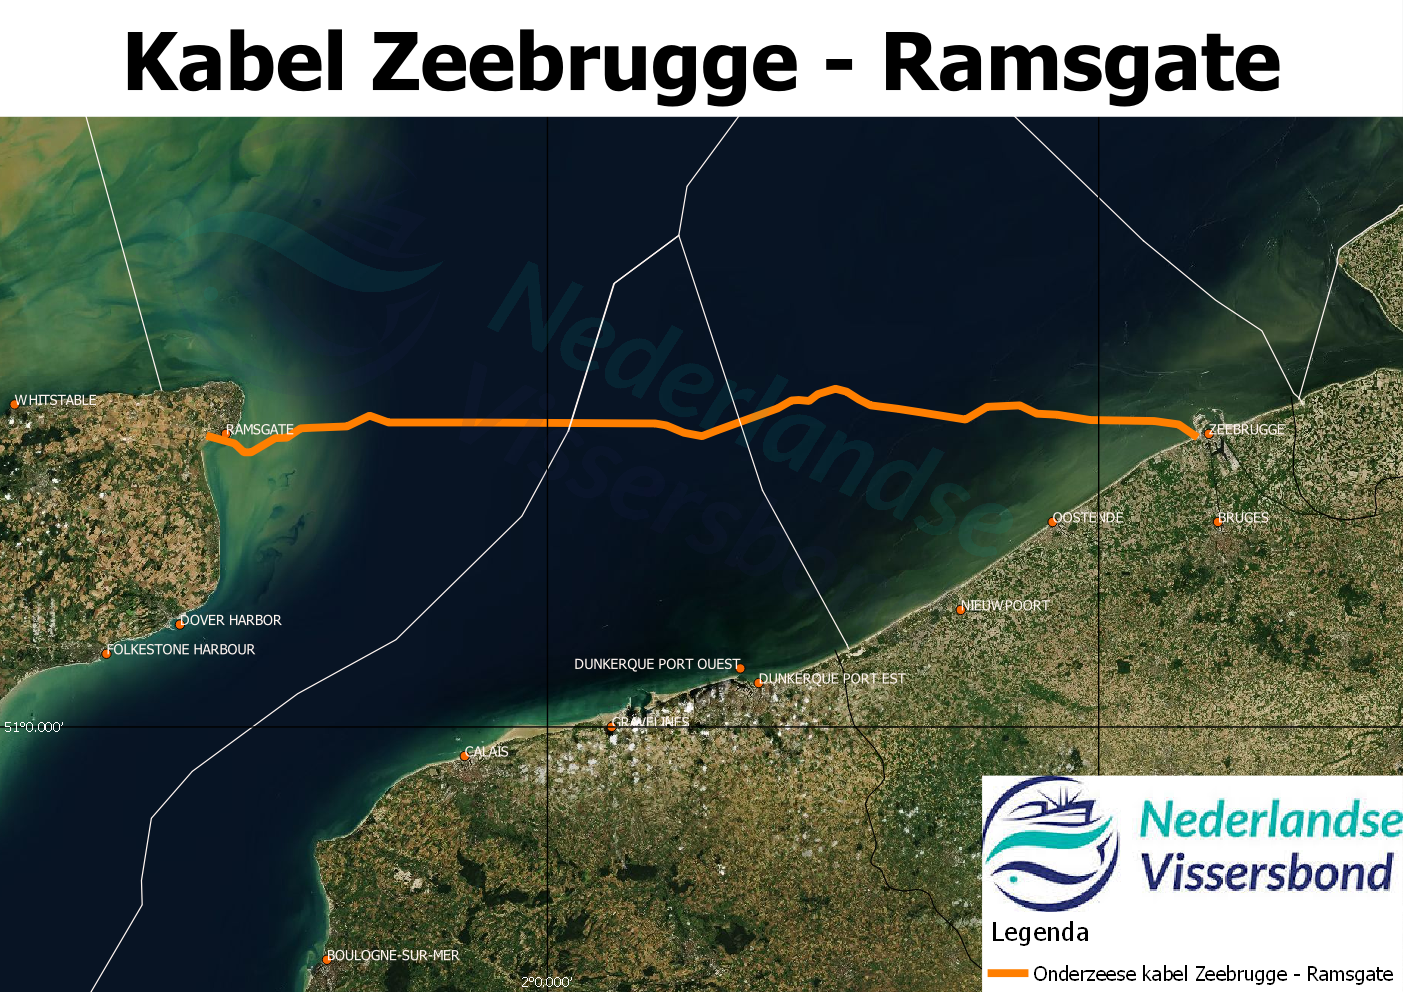 Zeebrugge - Ramsgate kabel